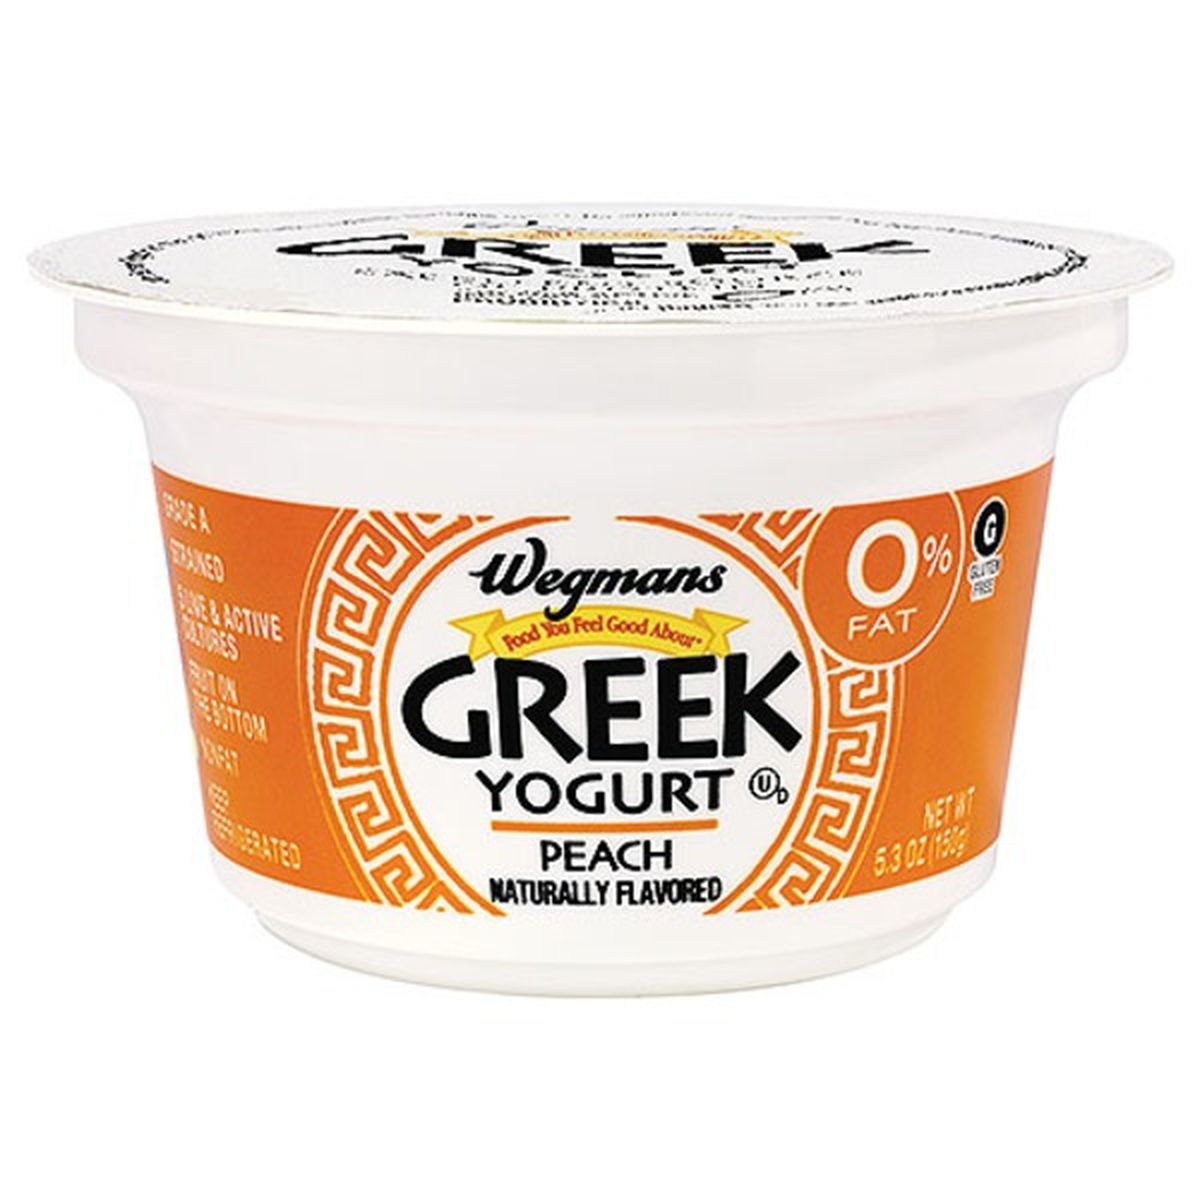 Calories in Wegmans Greek Peach Nonfat Yogurt